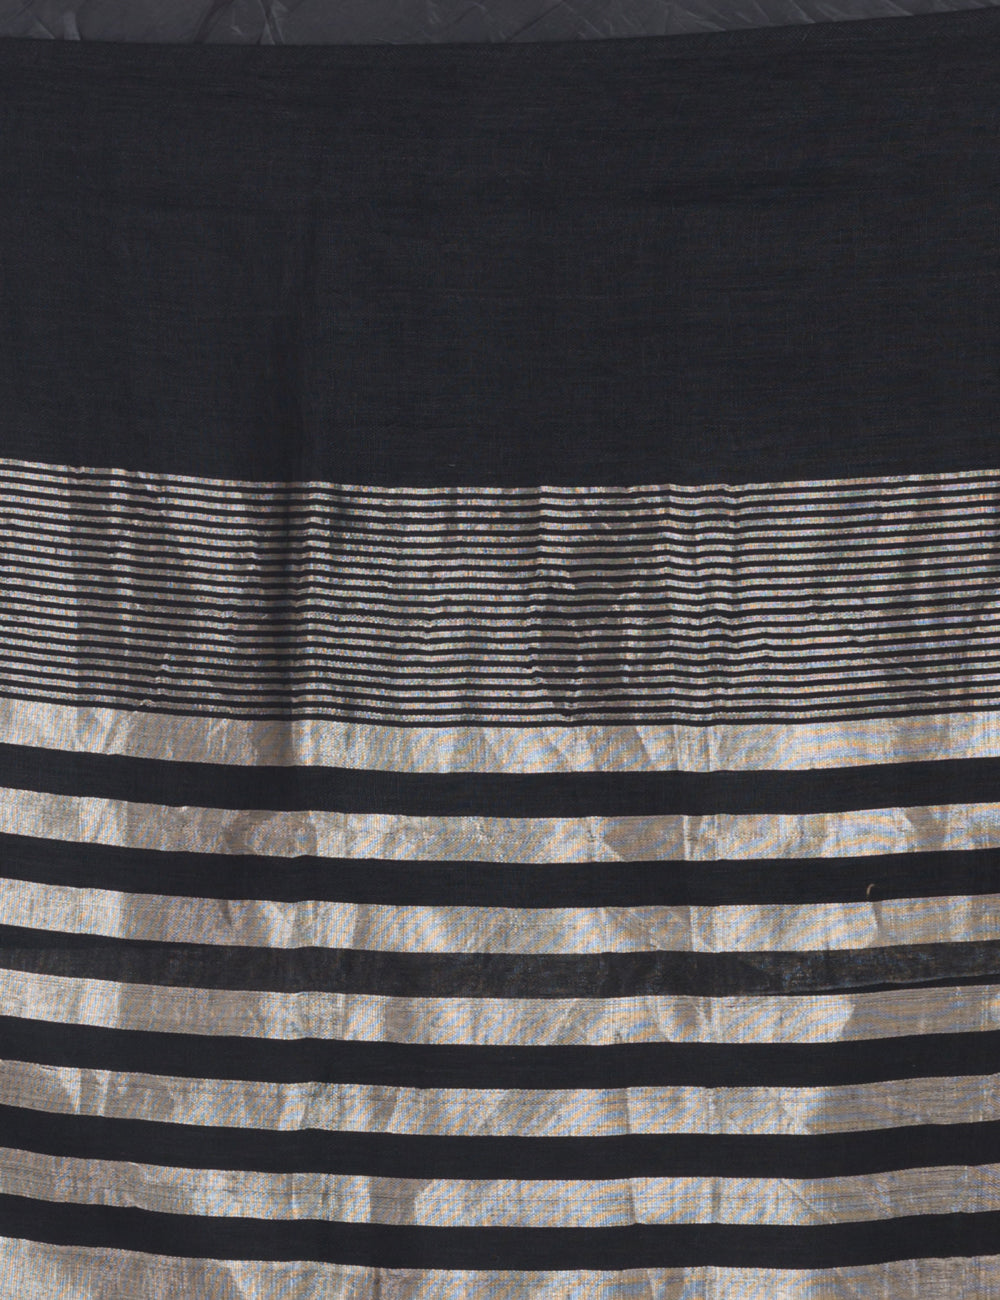 Black with silver shimmer border handwoven linen sari